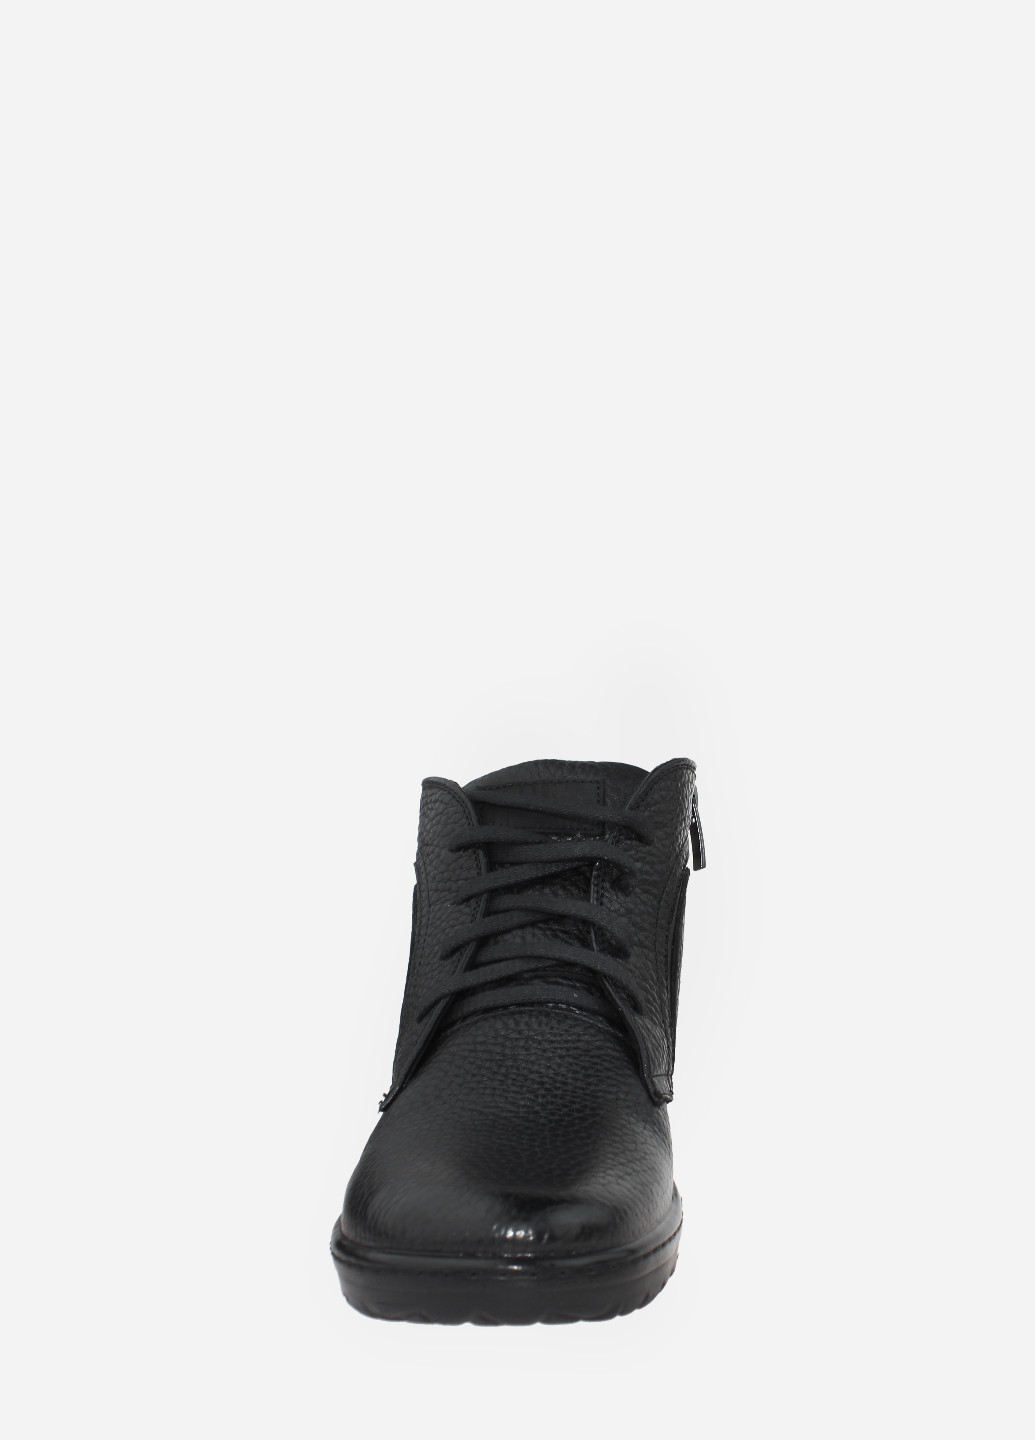 Осенние ботинки rc510-22 черный Calif